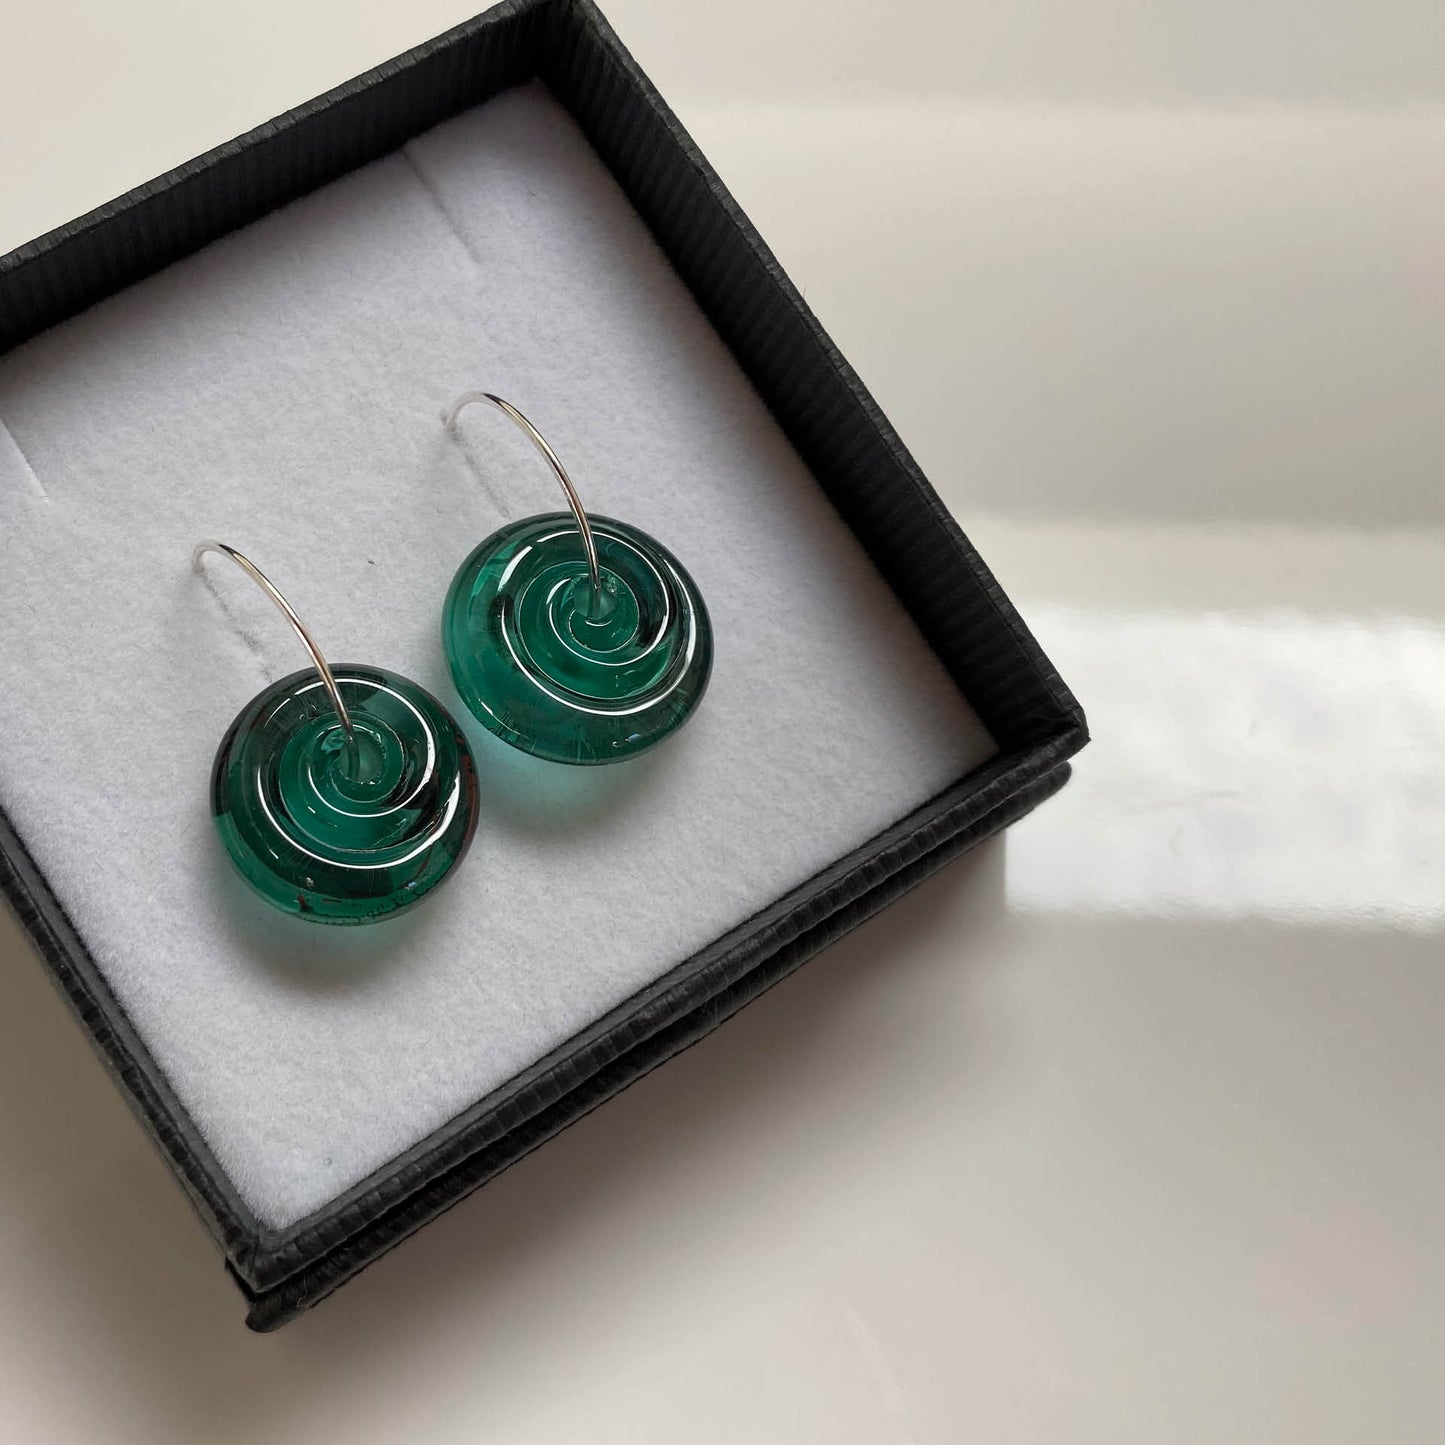 Lampwork glass spiral earrings in sea-green glass.